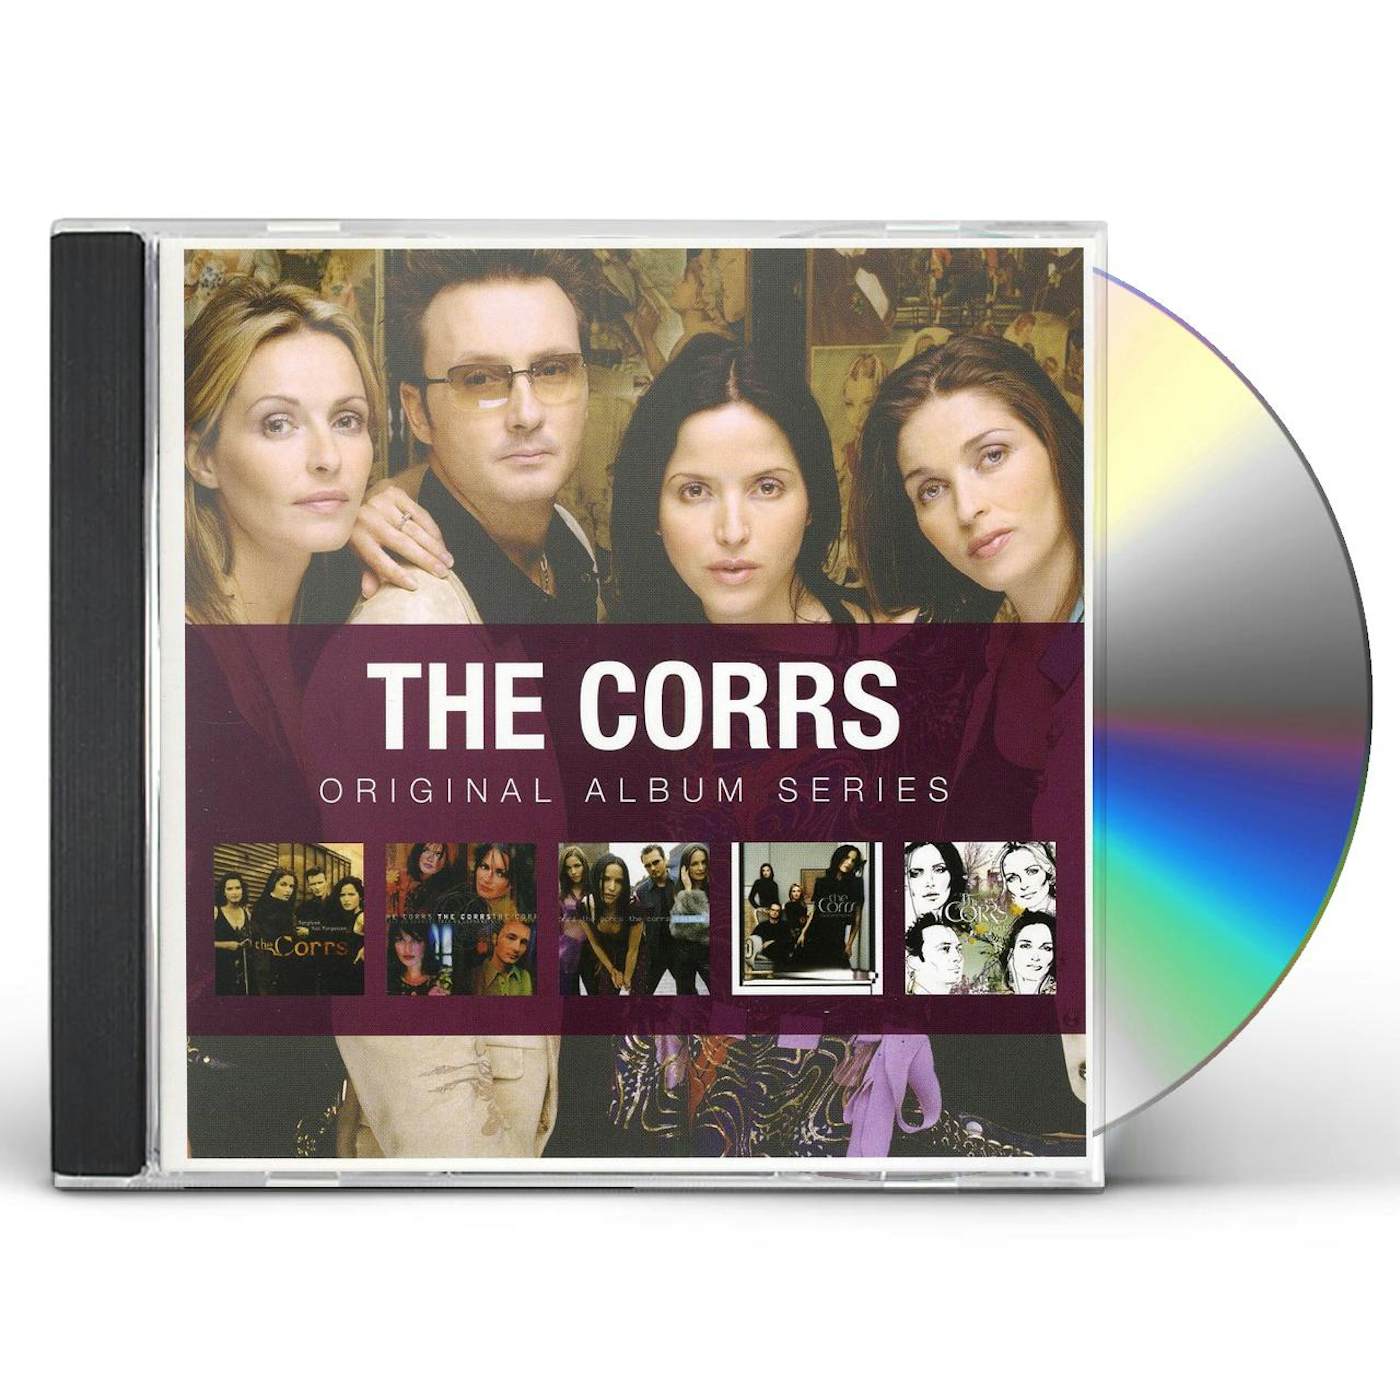 The Corrs ORIGINAL ALBUM SERIES CD